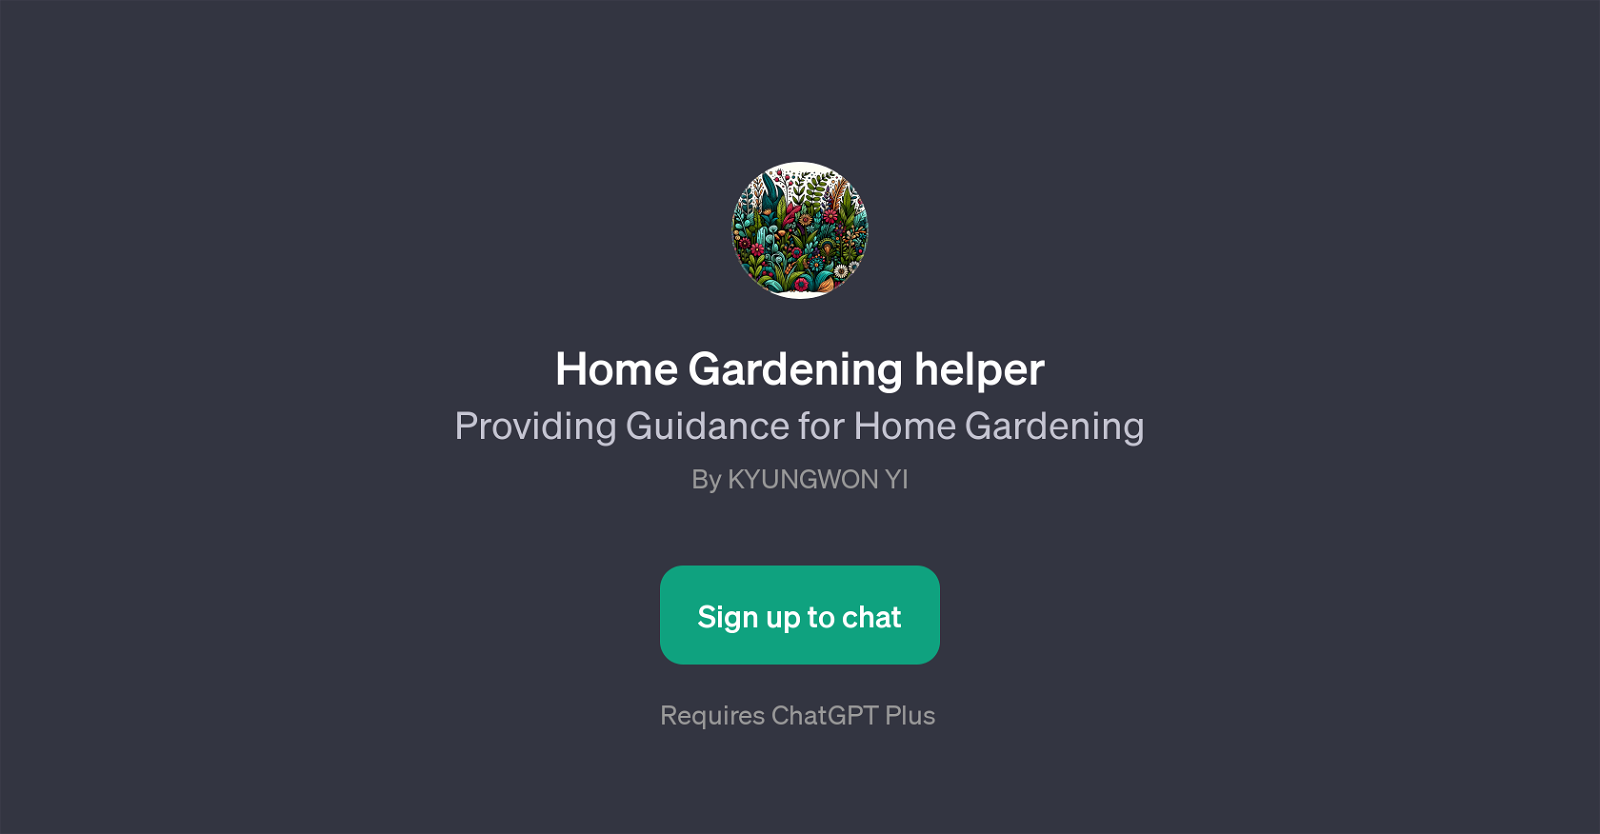 Home Gardening Helper website